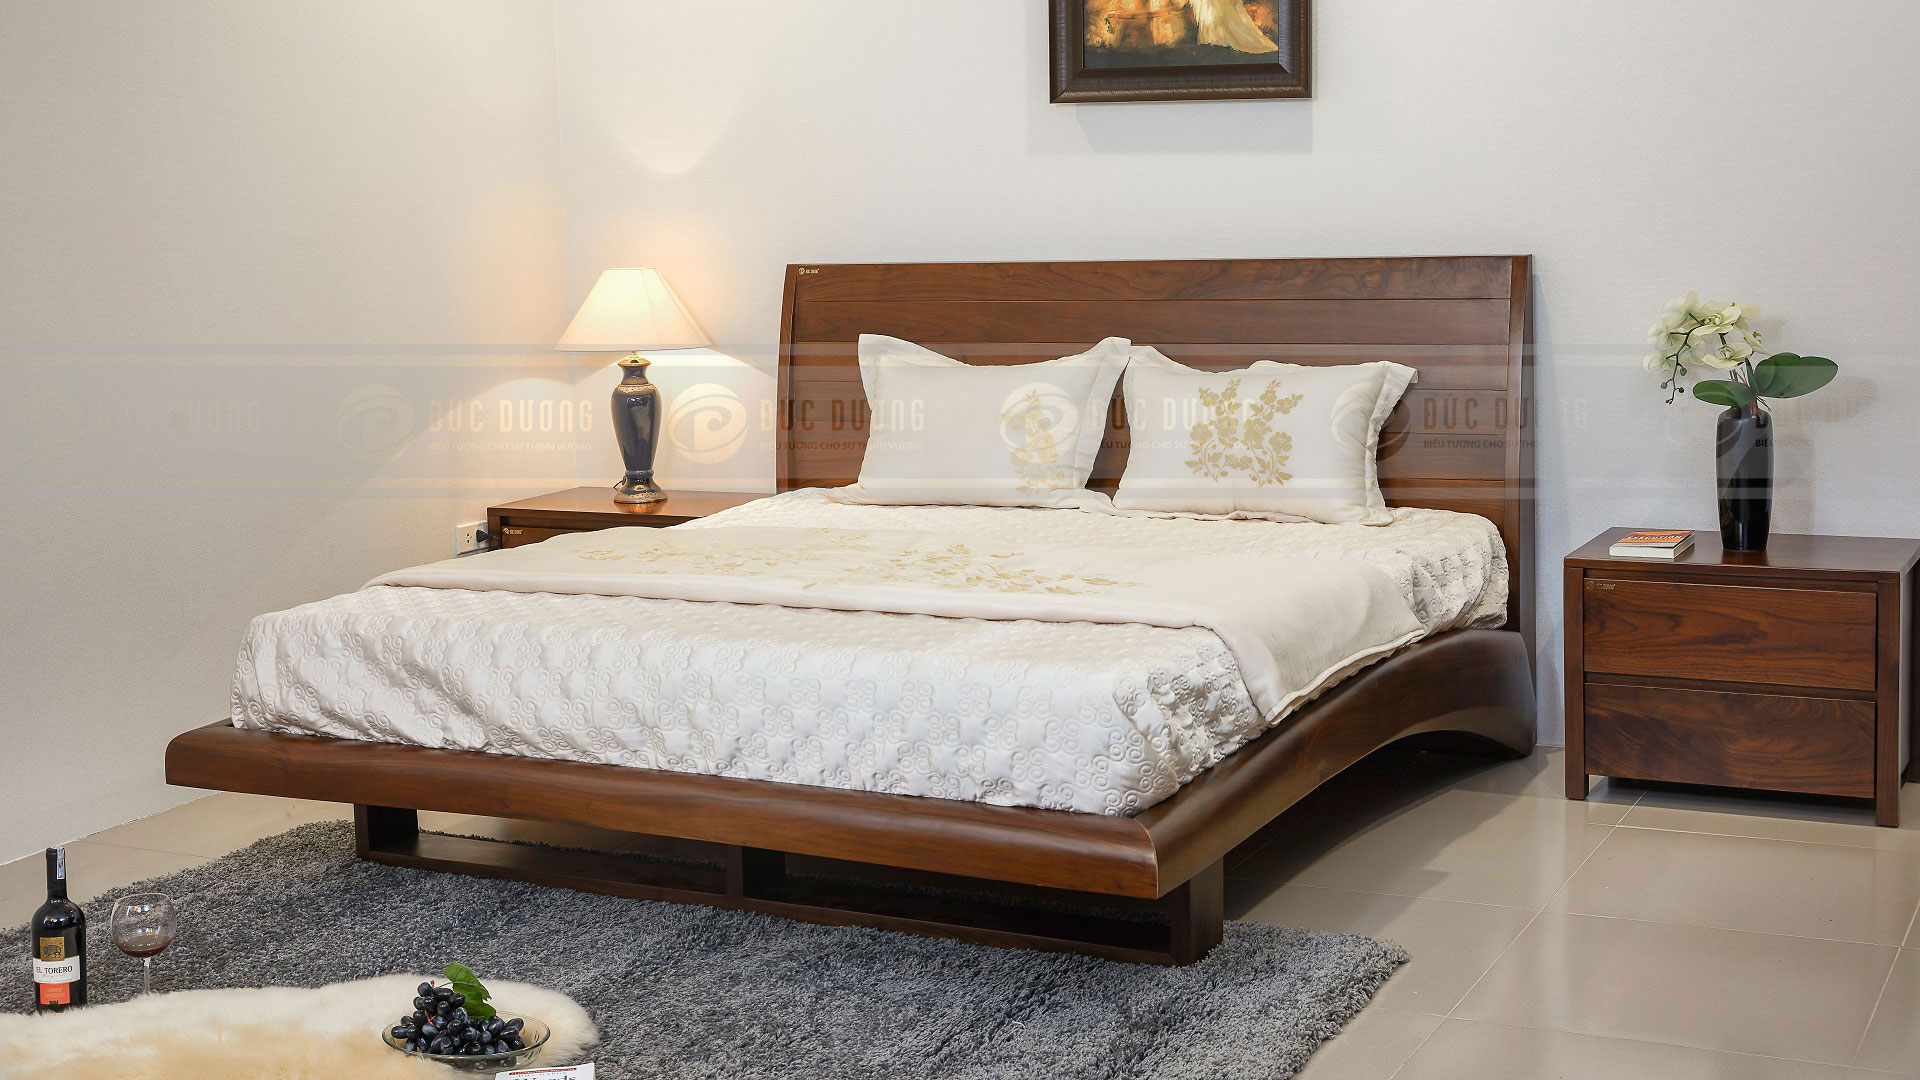 Các mẫu giường ngủ gỗ tự nhiên đẹp